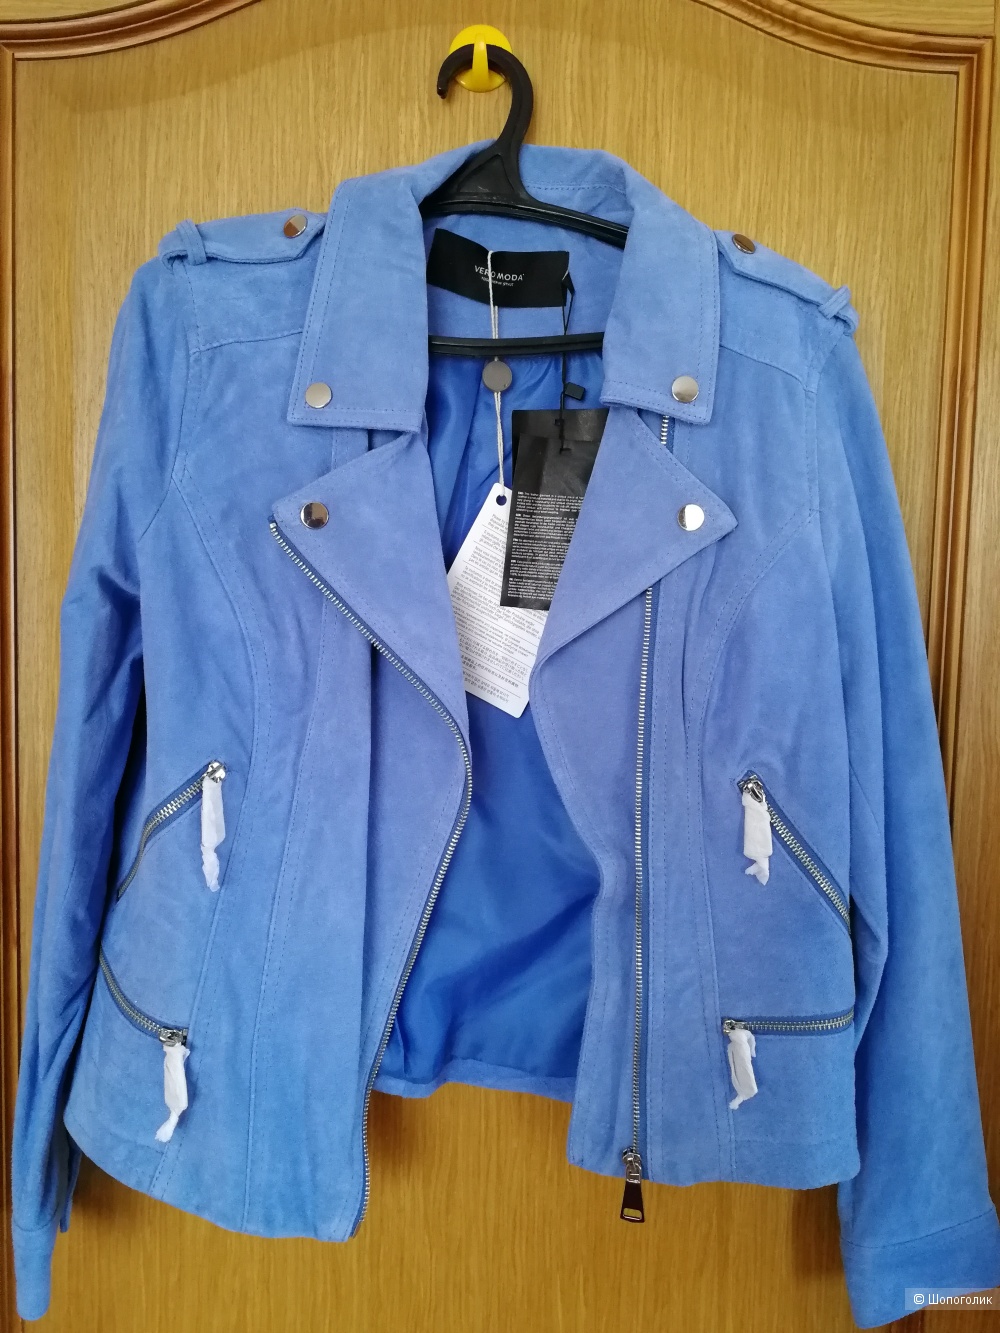 Замшевая куртка Vero Moda, новая, 44-46 (маркировка L) размер